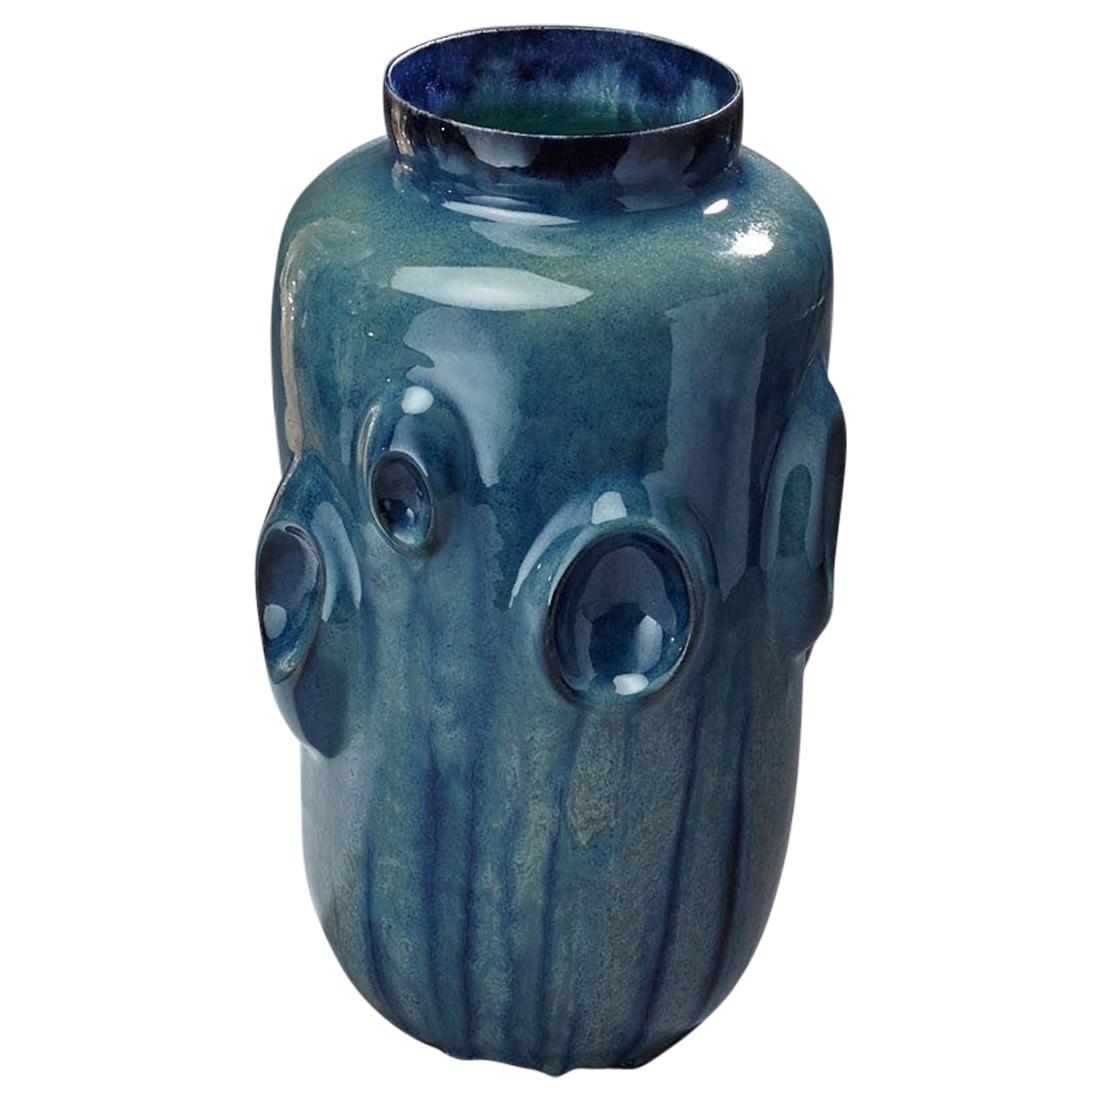 Ceramic Vase by Violante Lodolo D'Oria Glazed Stoneware Contemporary For Sale